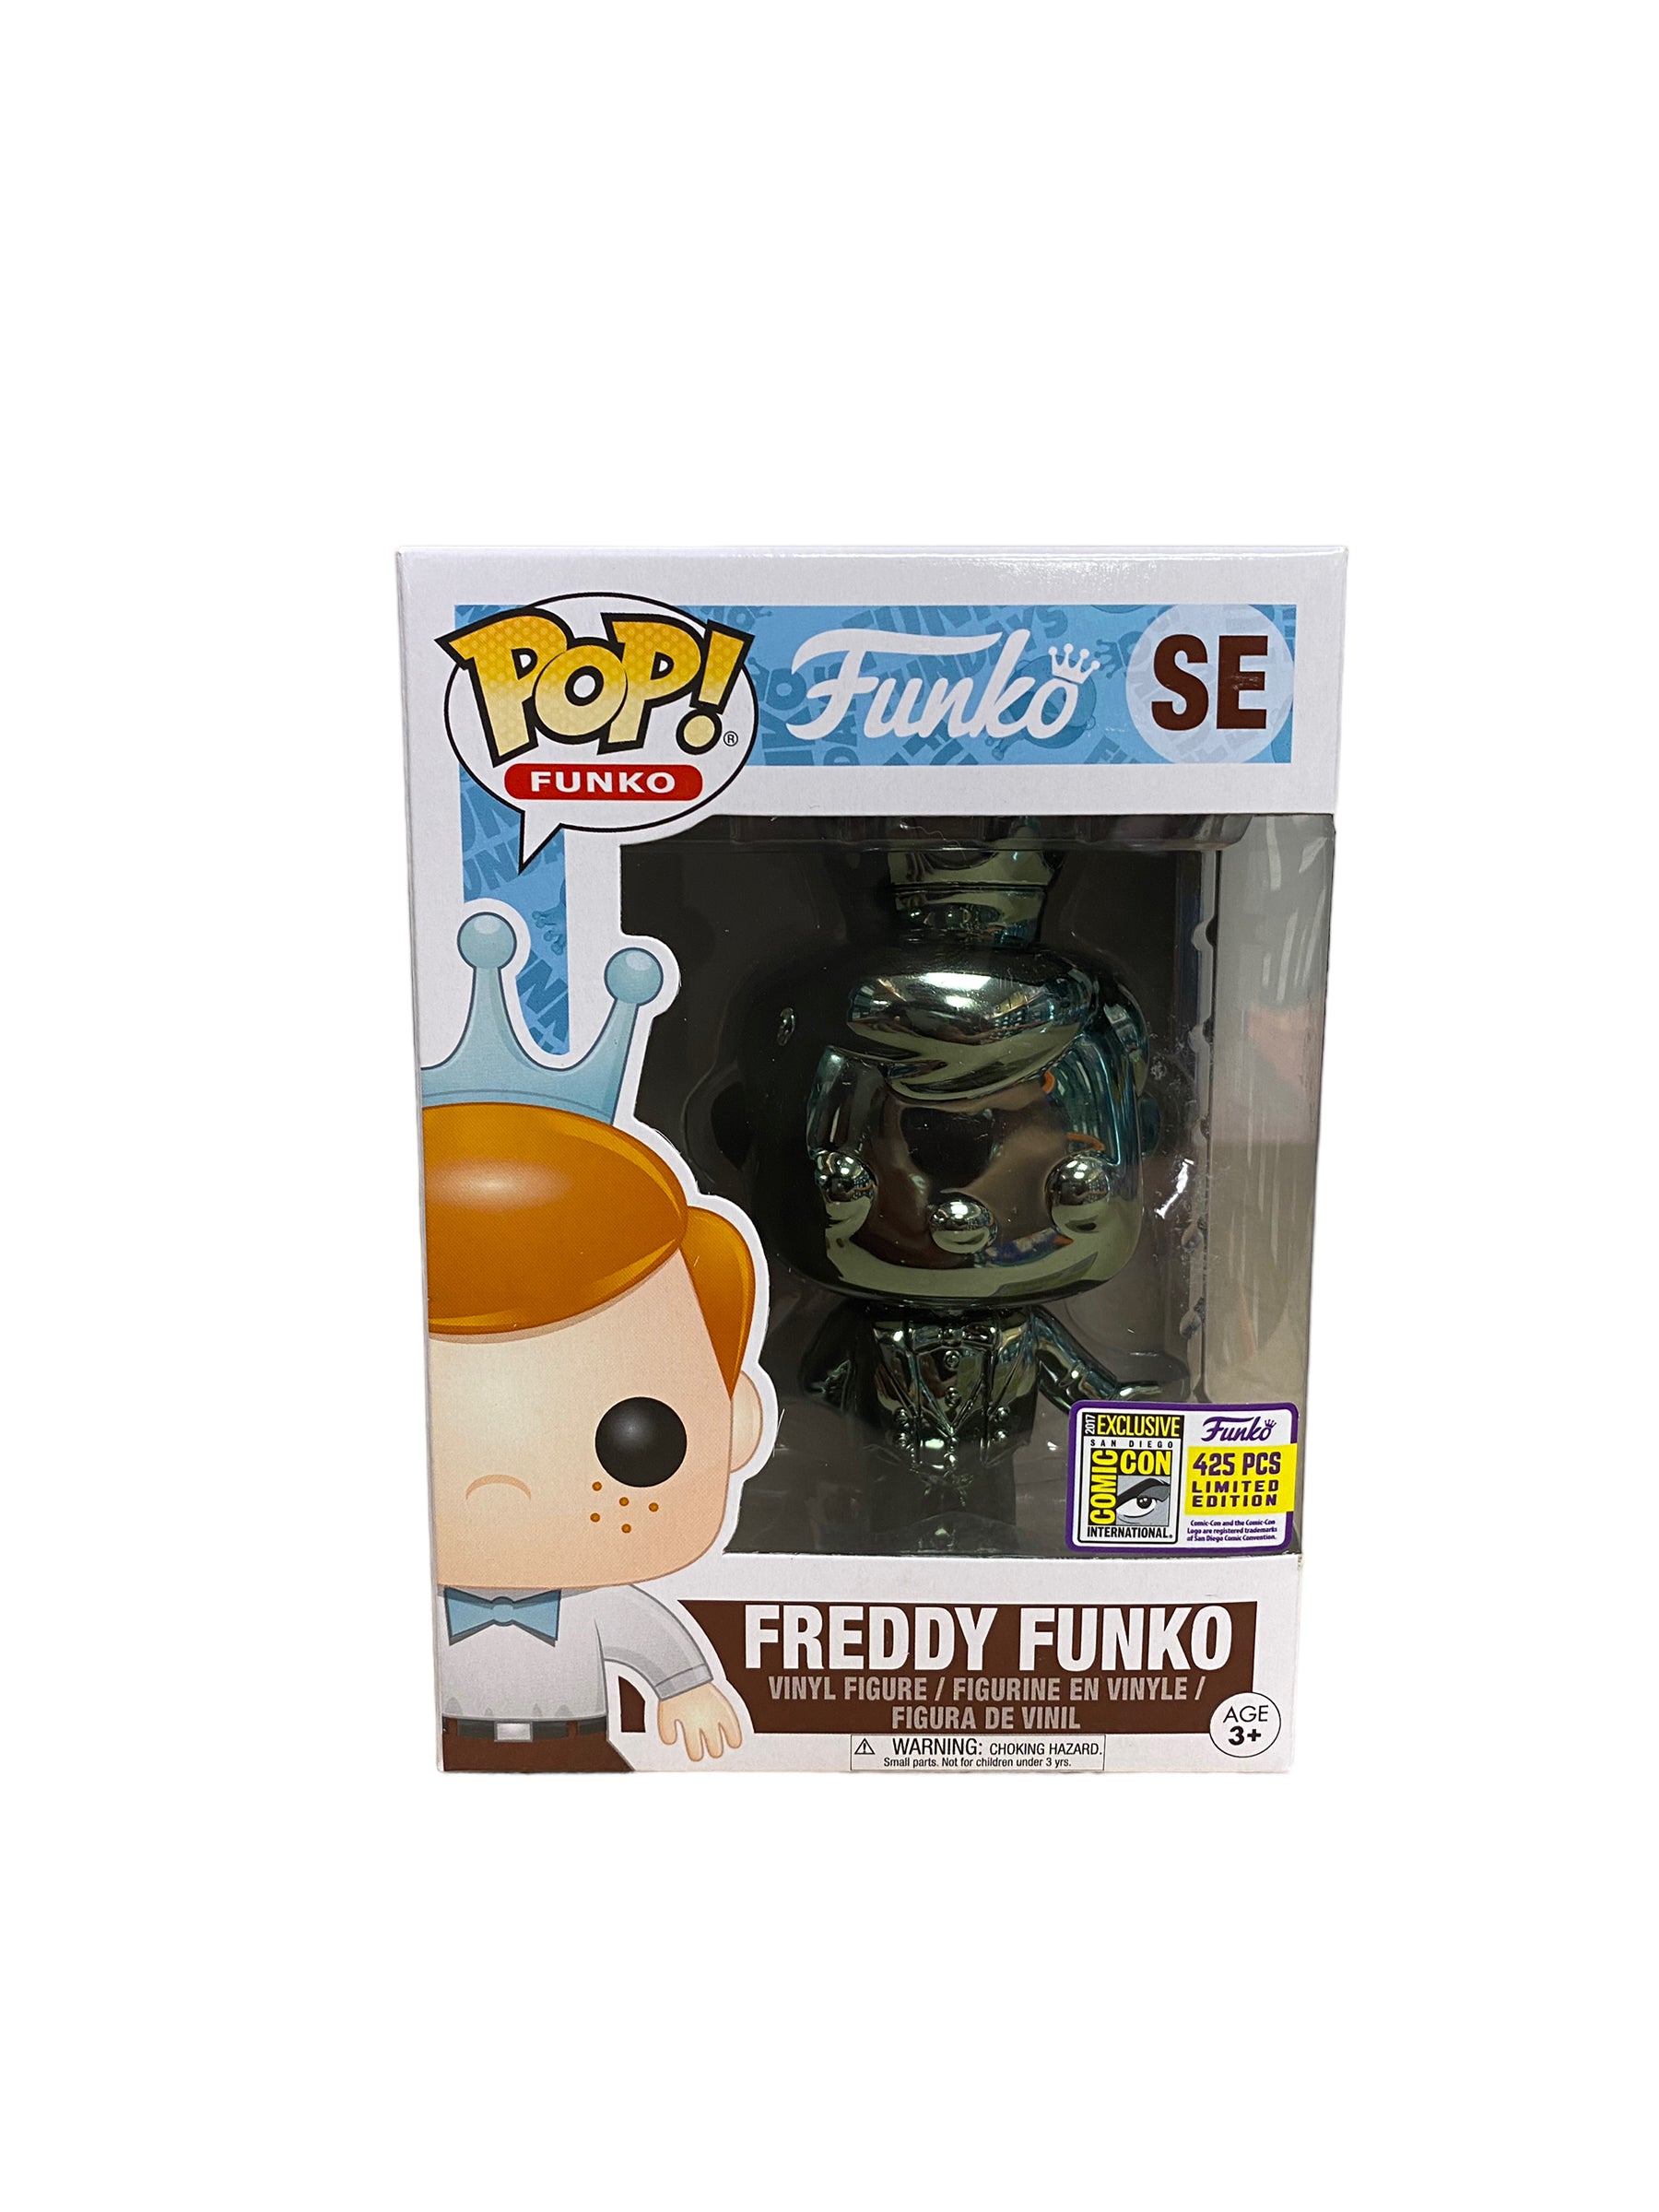 Freddy Funko Chrome Funko Pop! - SDCC 2017 Exclusive LE425 Pcs - Condition 8.5/10